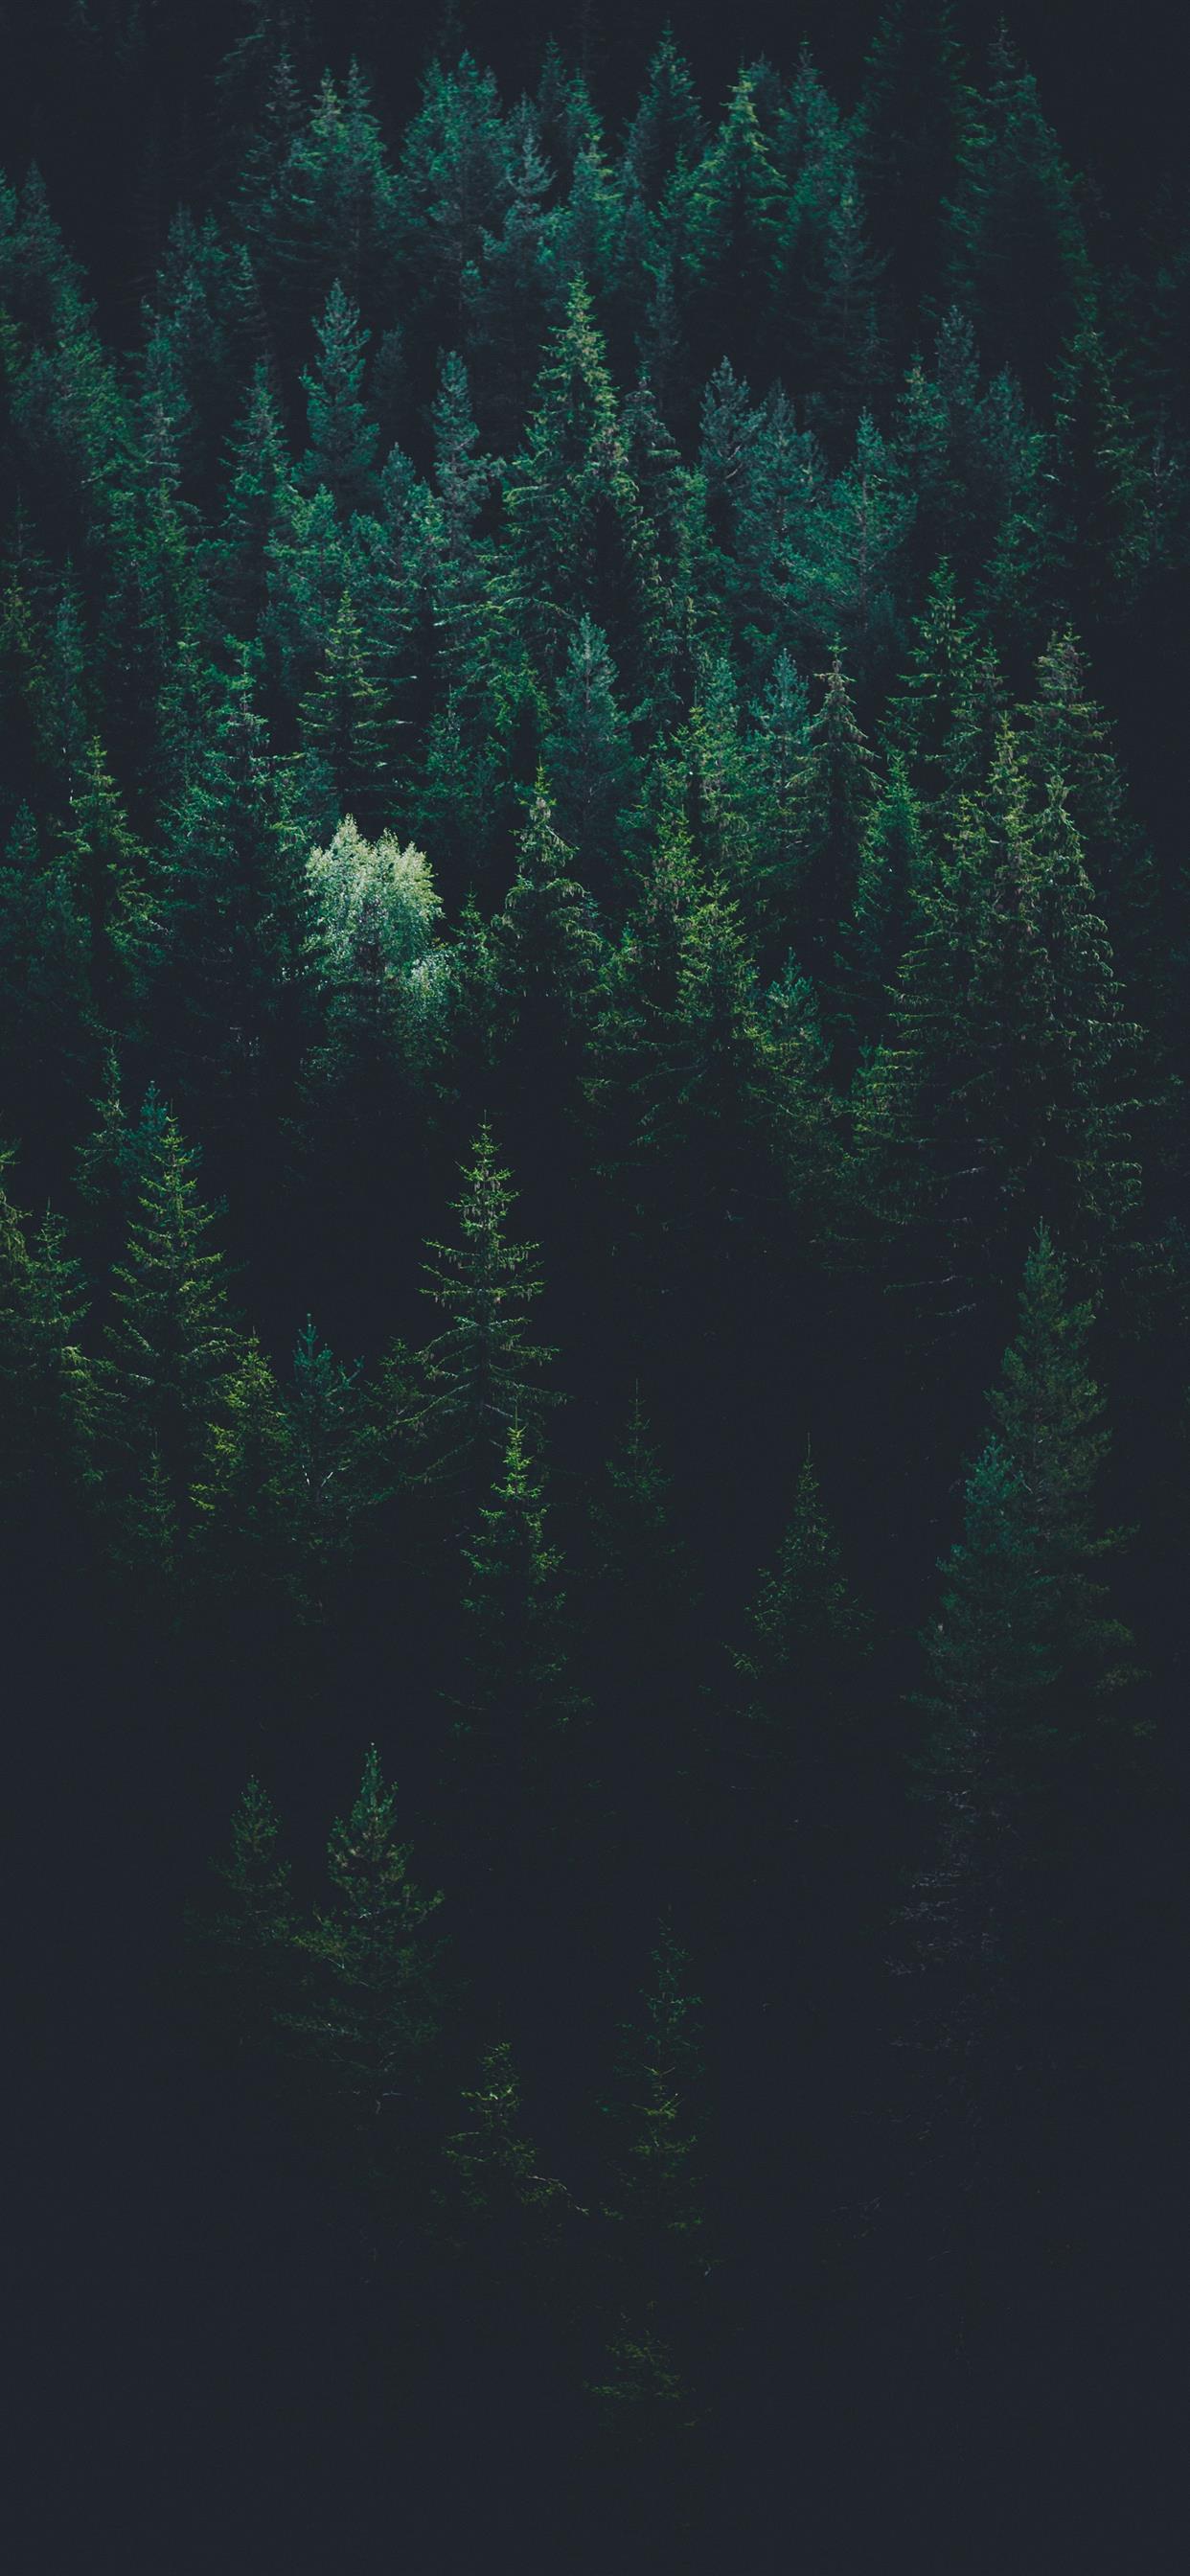 Hình nền iPhone X với hình ảnh rừng cây làm nền đẹp mắt, tạo nên một cảm giác bình yên khi nhìn vào bức ảnh. Đây chắc chắn là sự lựa chọn tuyệt vời cho những ai muốn tìm kiếm một bức ảnh nền đẹp, êm ái và tâm lý. Thật đáng để đón xem!